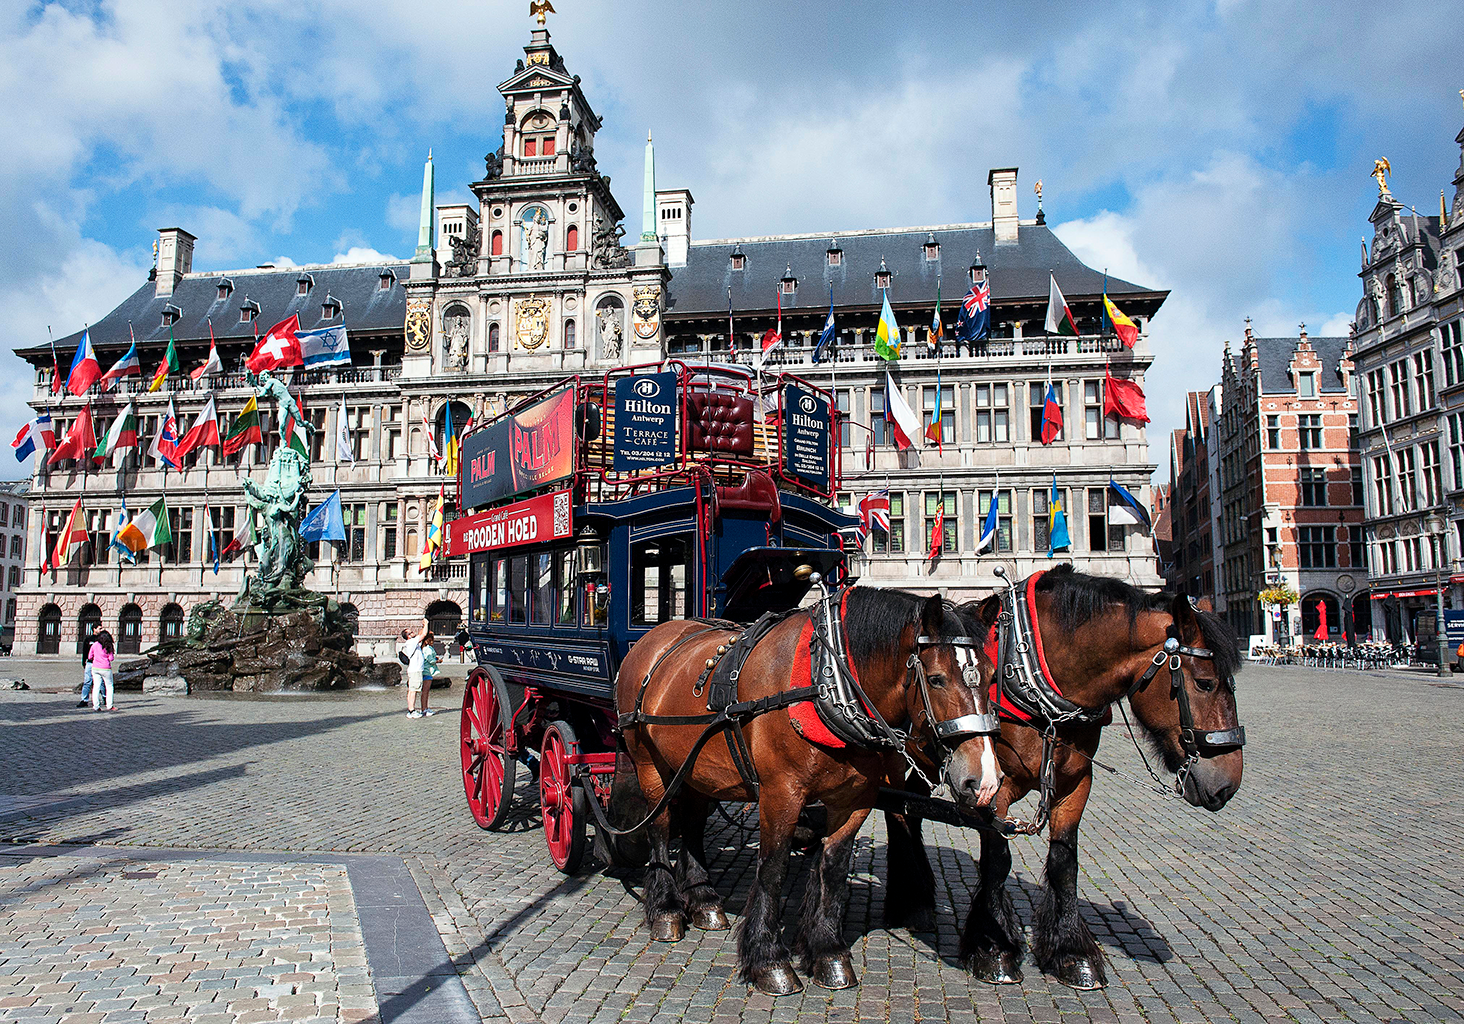 Det historiske bytorget i Antwerpen kjent som Grote Markt. (Foto: Paul
Marsall)